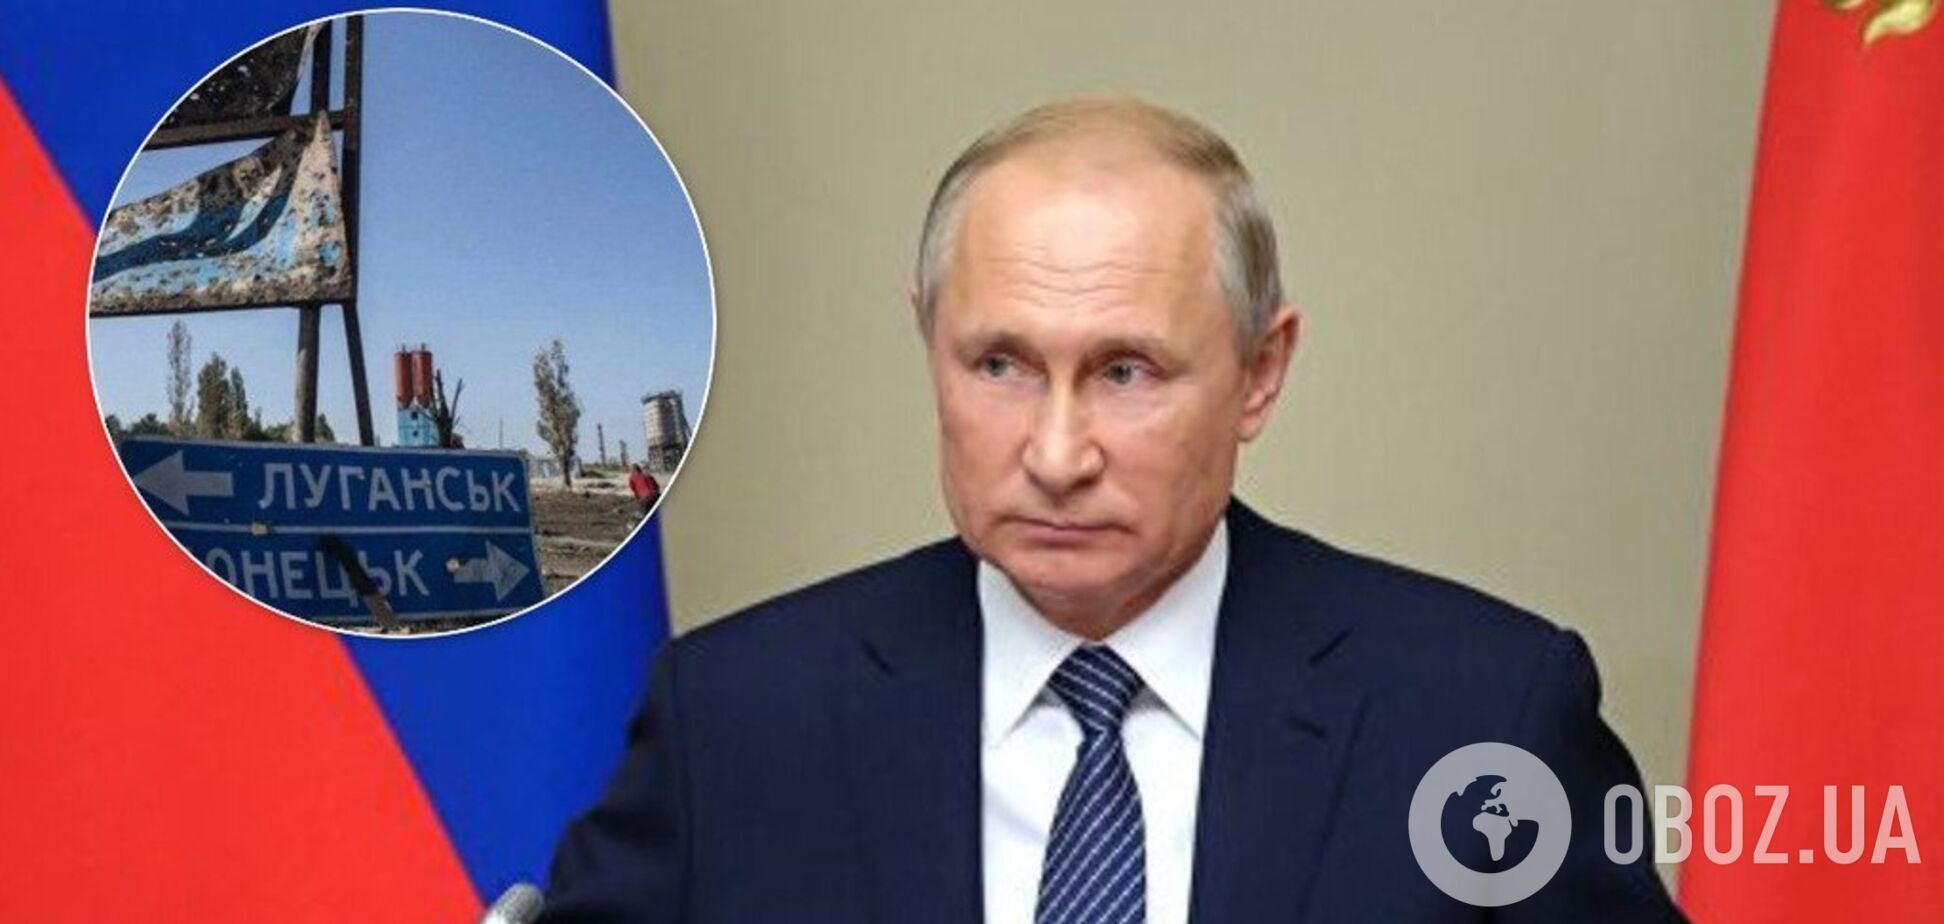 'Зеленський здав Україну': ексрадник Путіна заявив про капітуляцію країни